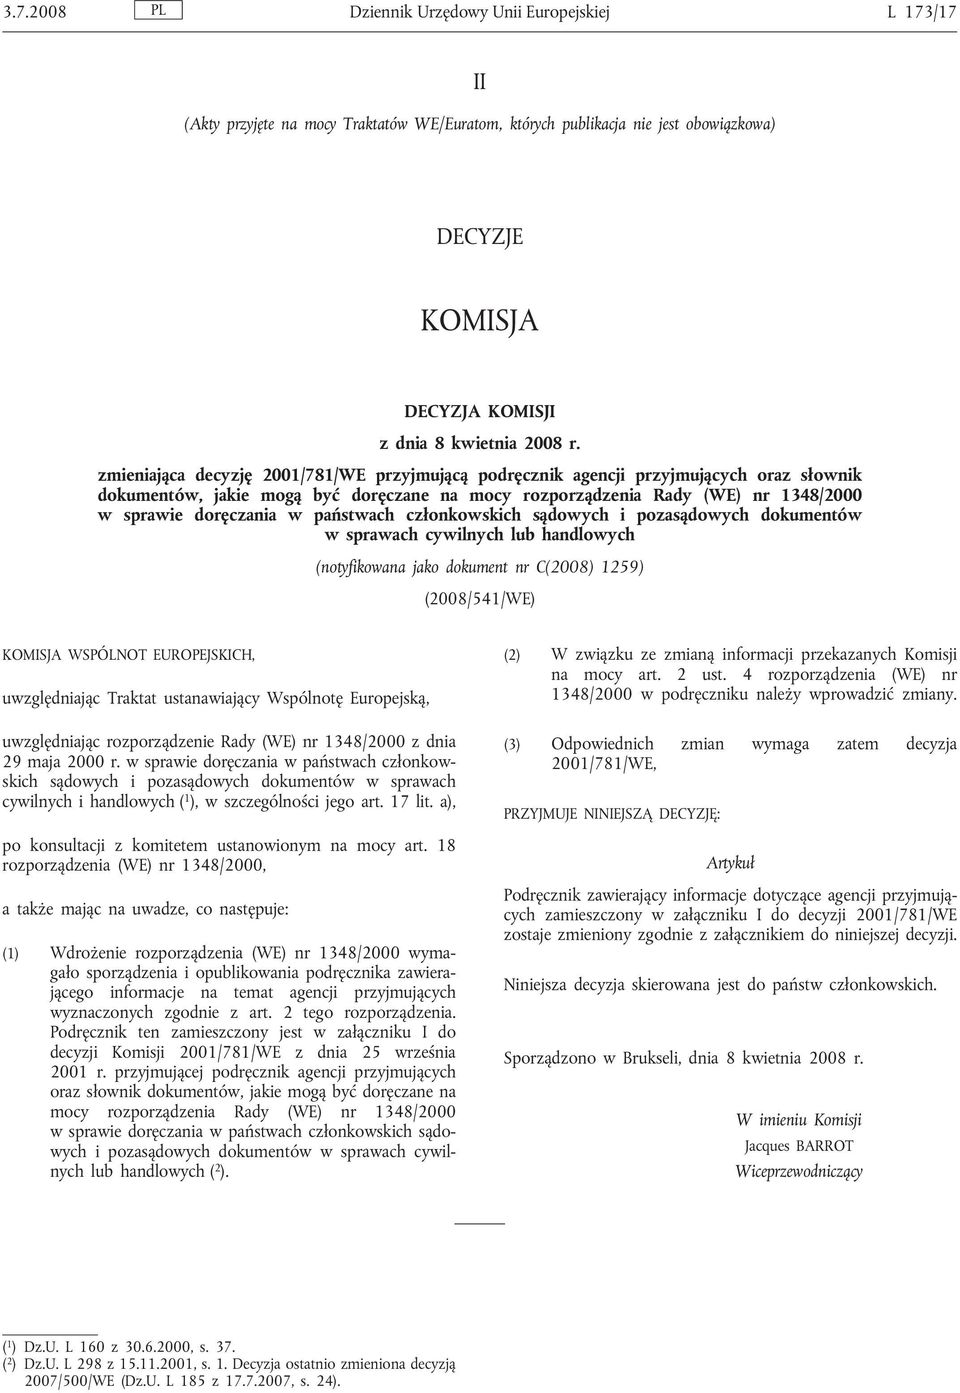 państwach członkowskich sądowych i pozasądowych dokumentów w sprawach cywilnych lub handlowych (notyfikowana jako dokument nr C(2008) 1259) (2008/541/WE) KOMISJA WSPÓLNOT EUROPEJSKICH, uwzględniając